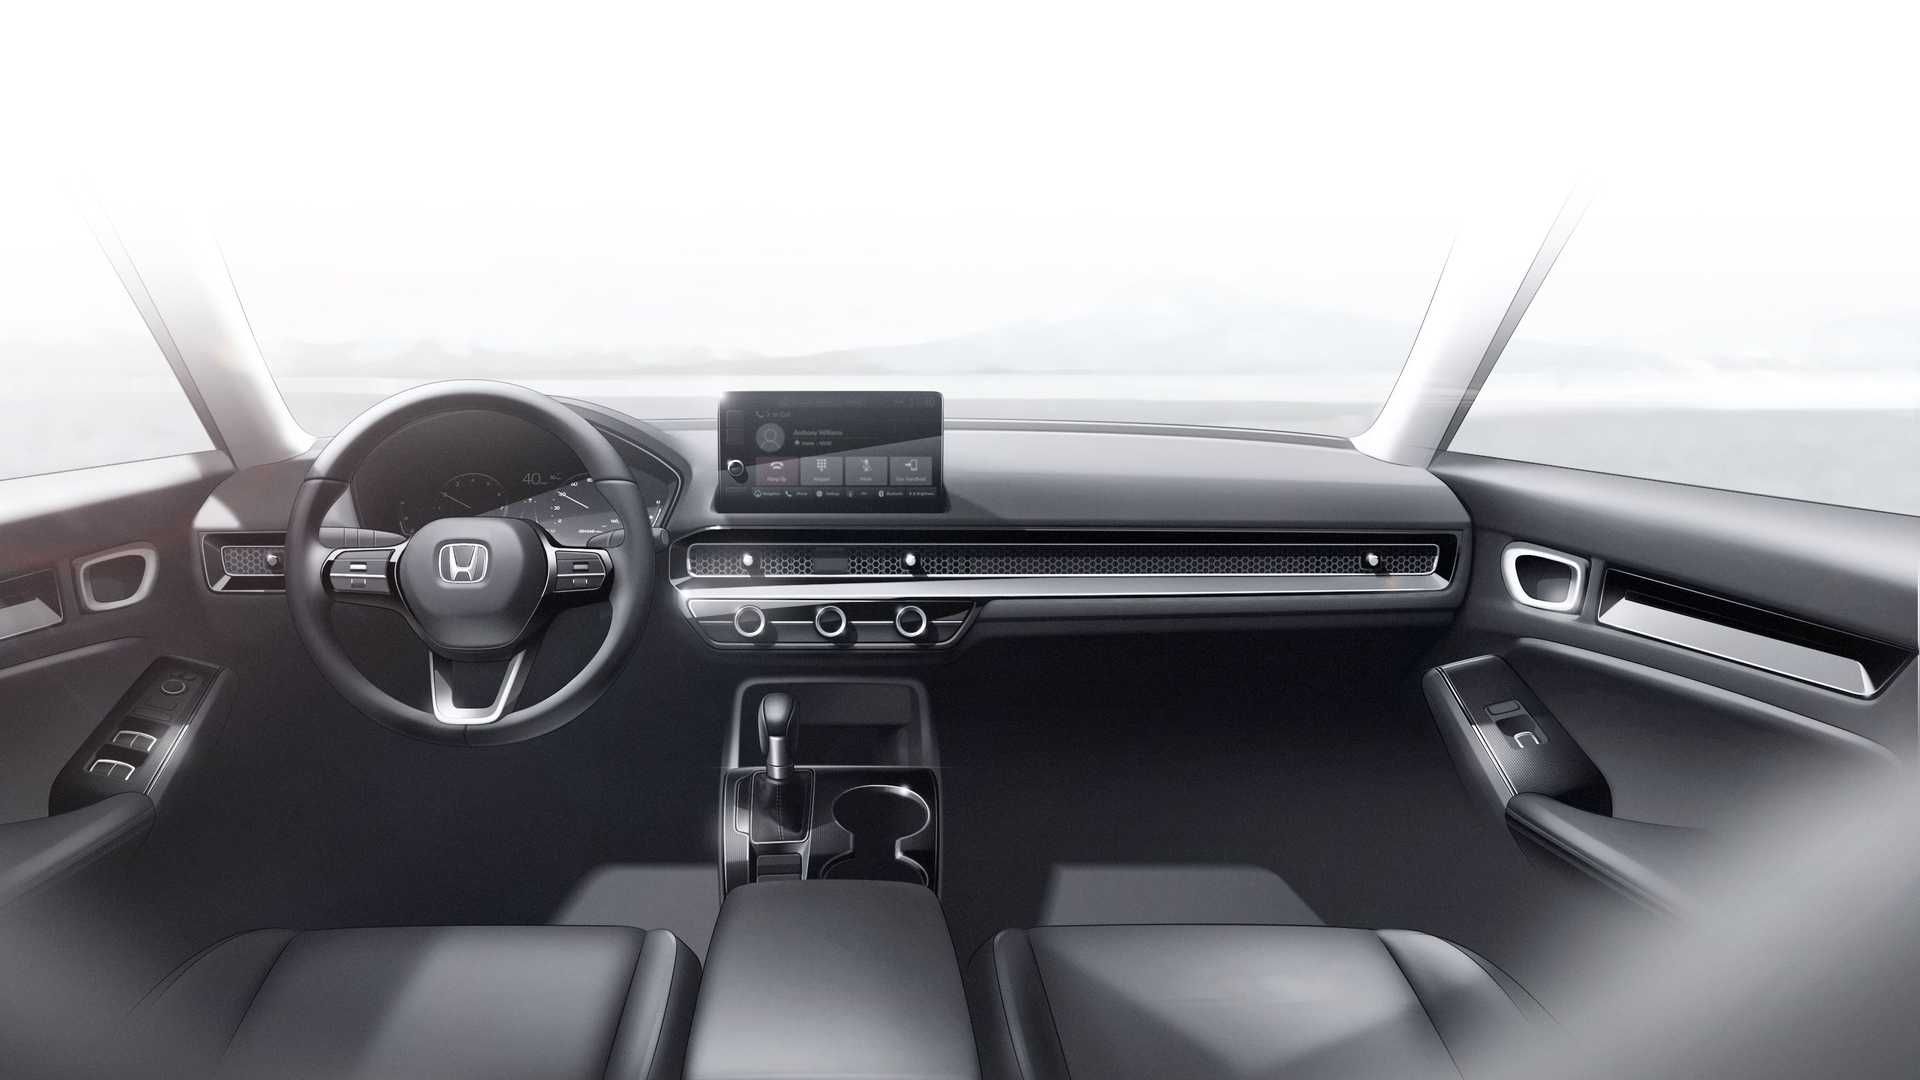 مرجع متخصصين ايران Honda Civic Prototype هوندا سيويك پروتوتايپ 2022 نماي داخلي